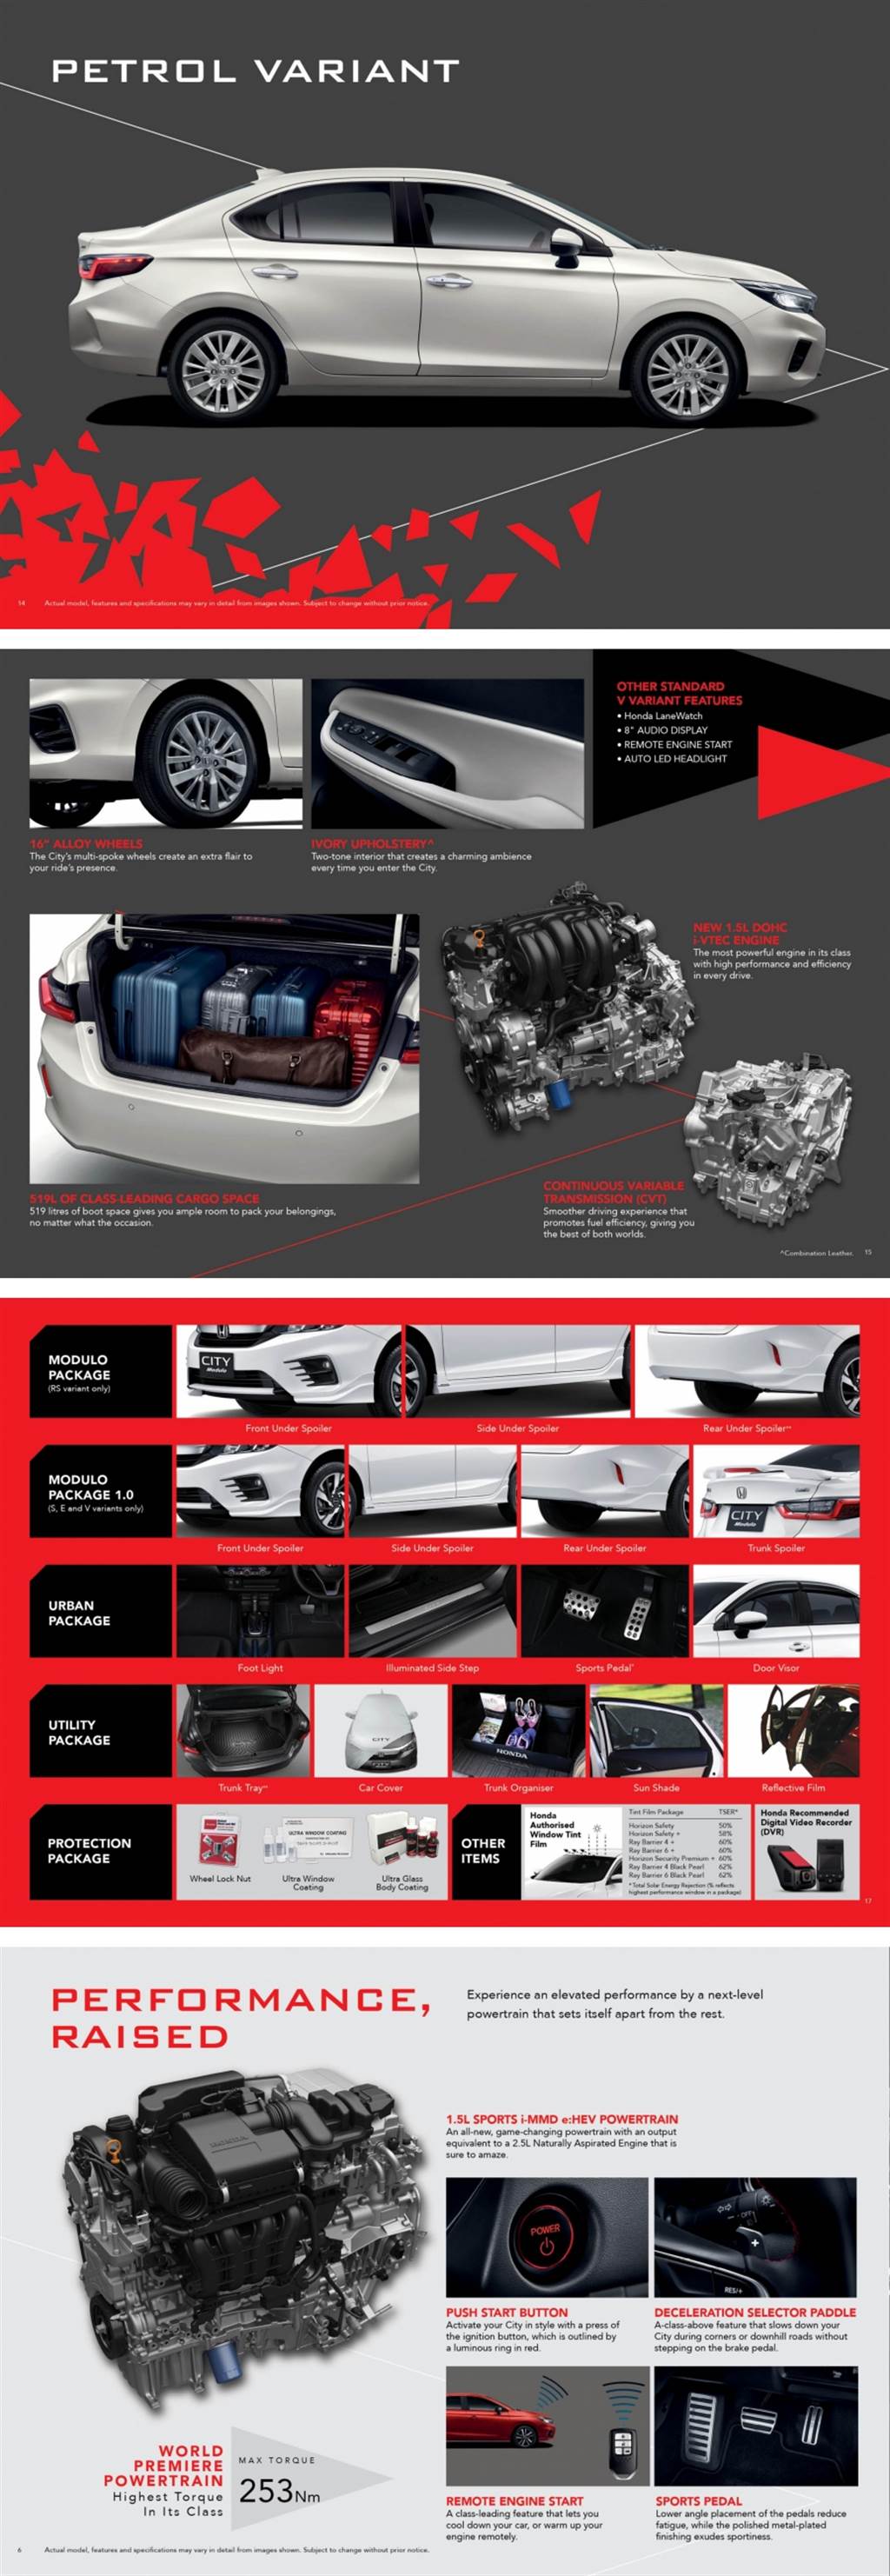 導入最新世代 Sport Hybrid i-MMD 技術，第七代 Honda City 1.5 e:HEV RS 馬來西亞世界首發！
